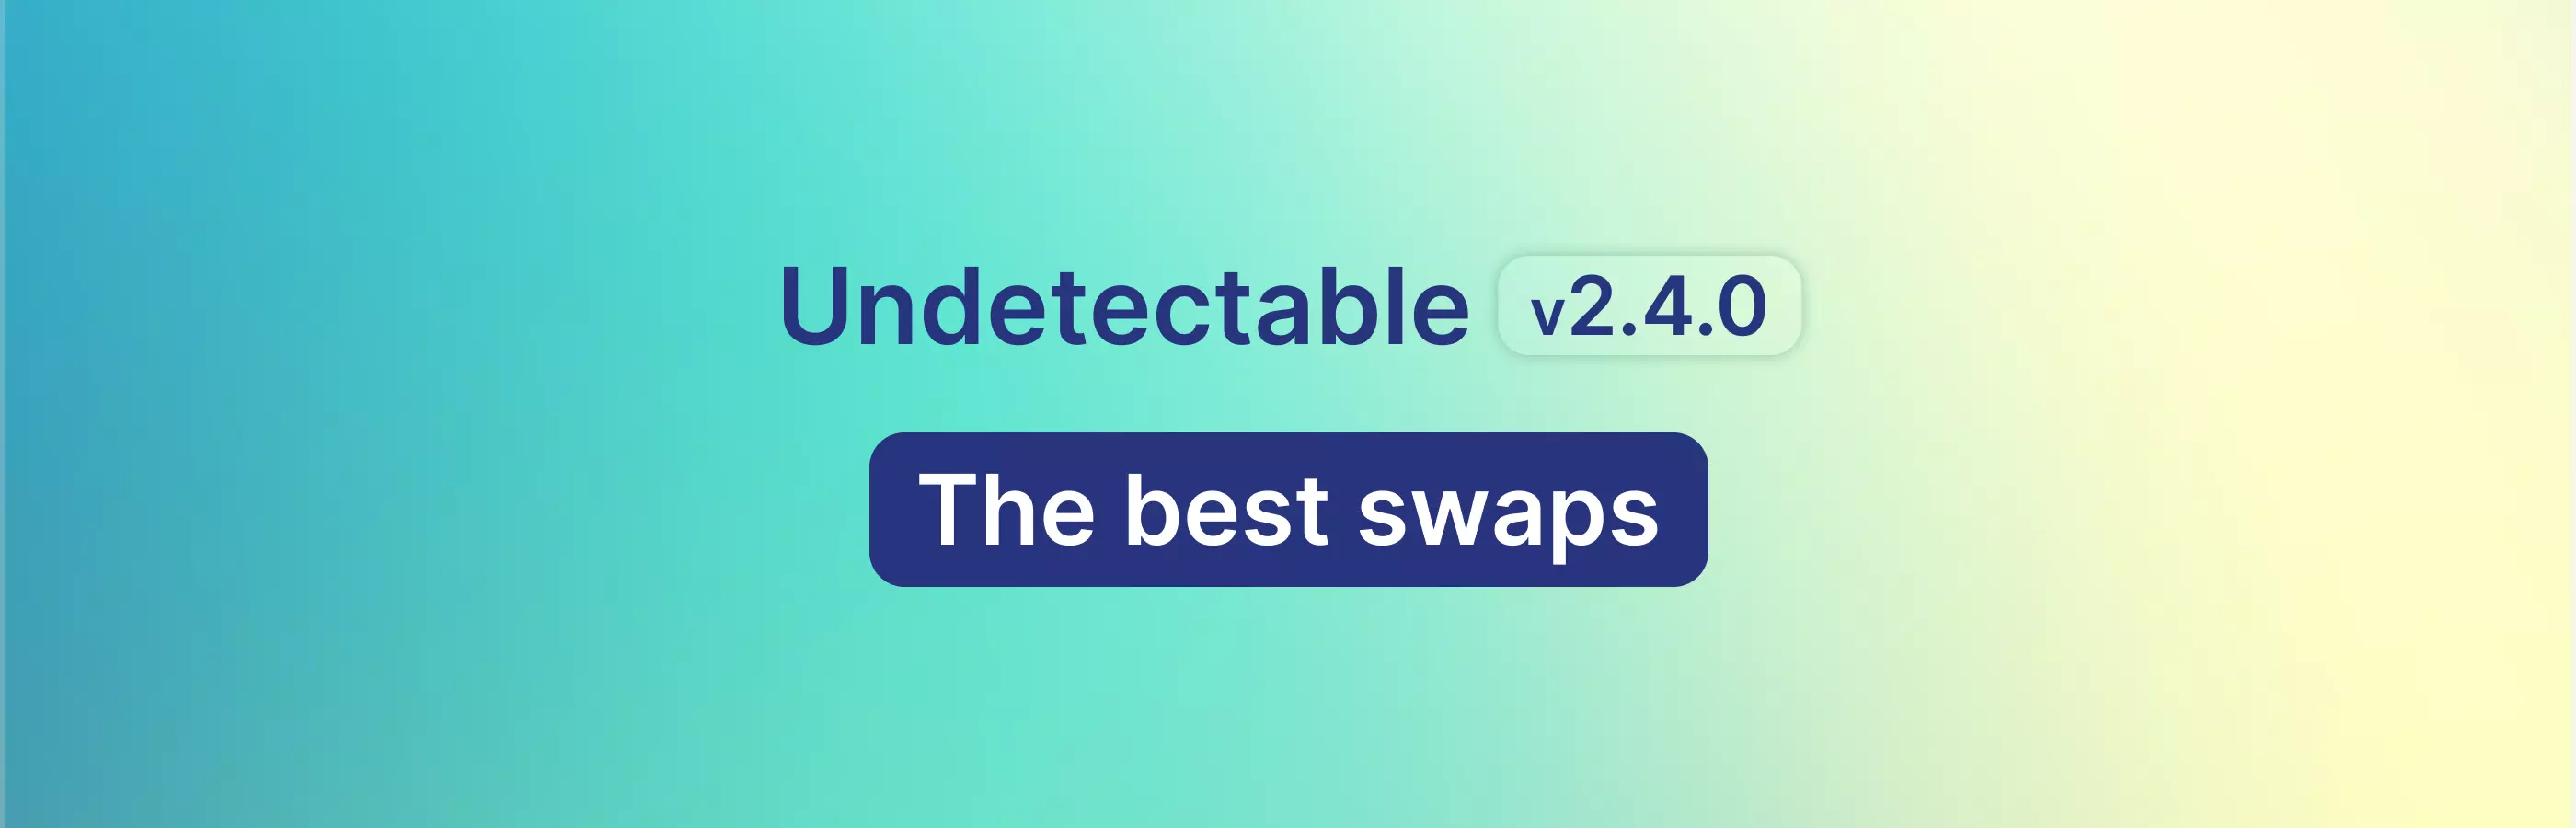 Atualização Undetectable 2.4.0 - Melhores substituições